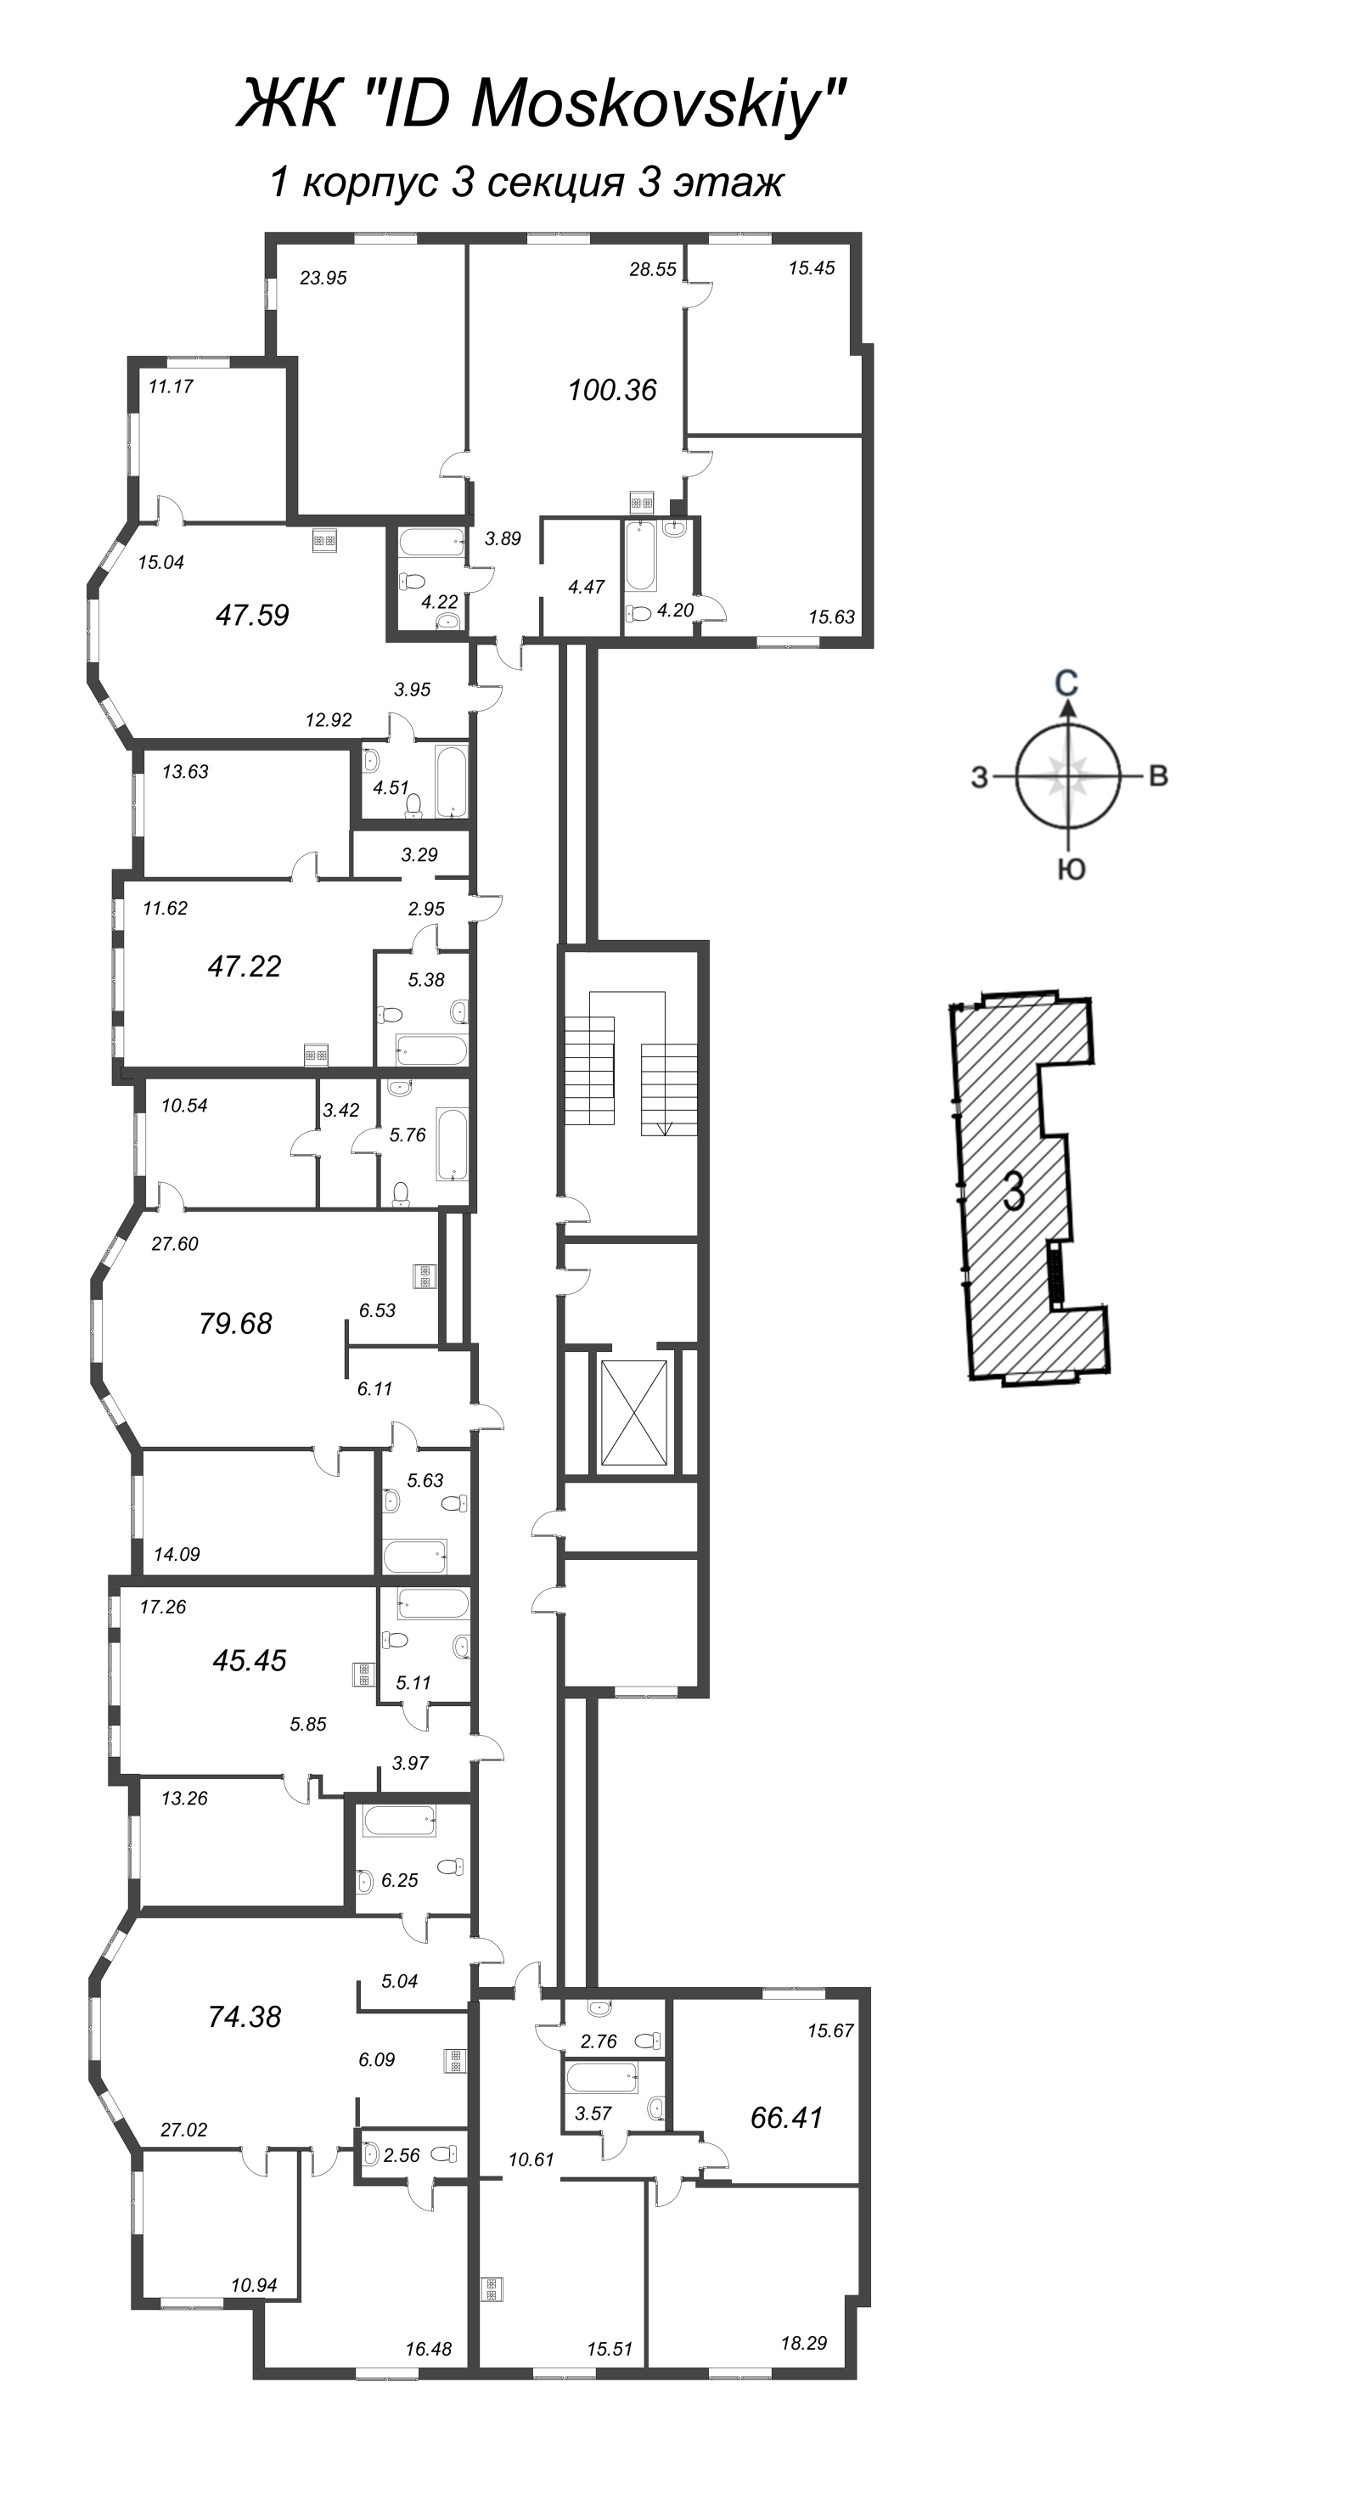 3-комнатная (Евро) квартира, 74.38 м² в ЖК "ID Moskovskiy" - планировка этажа